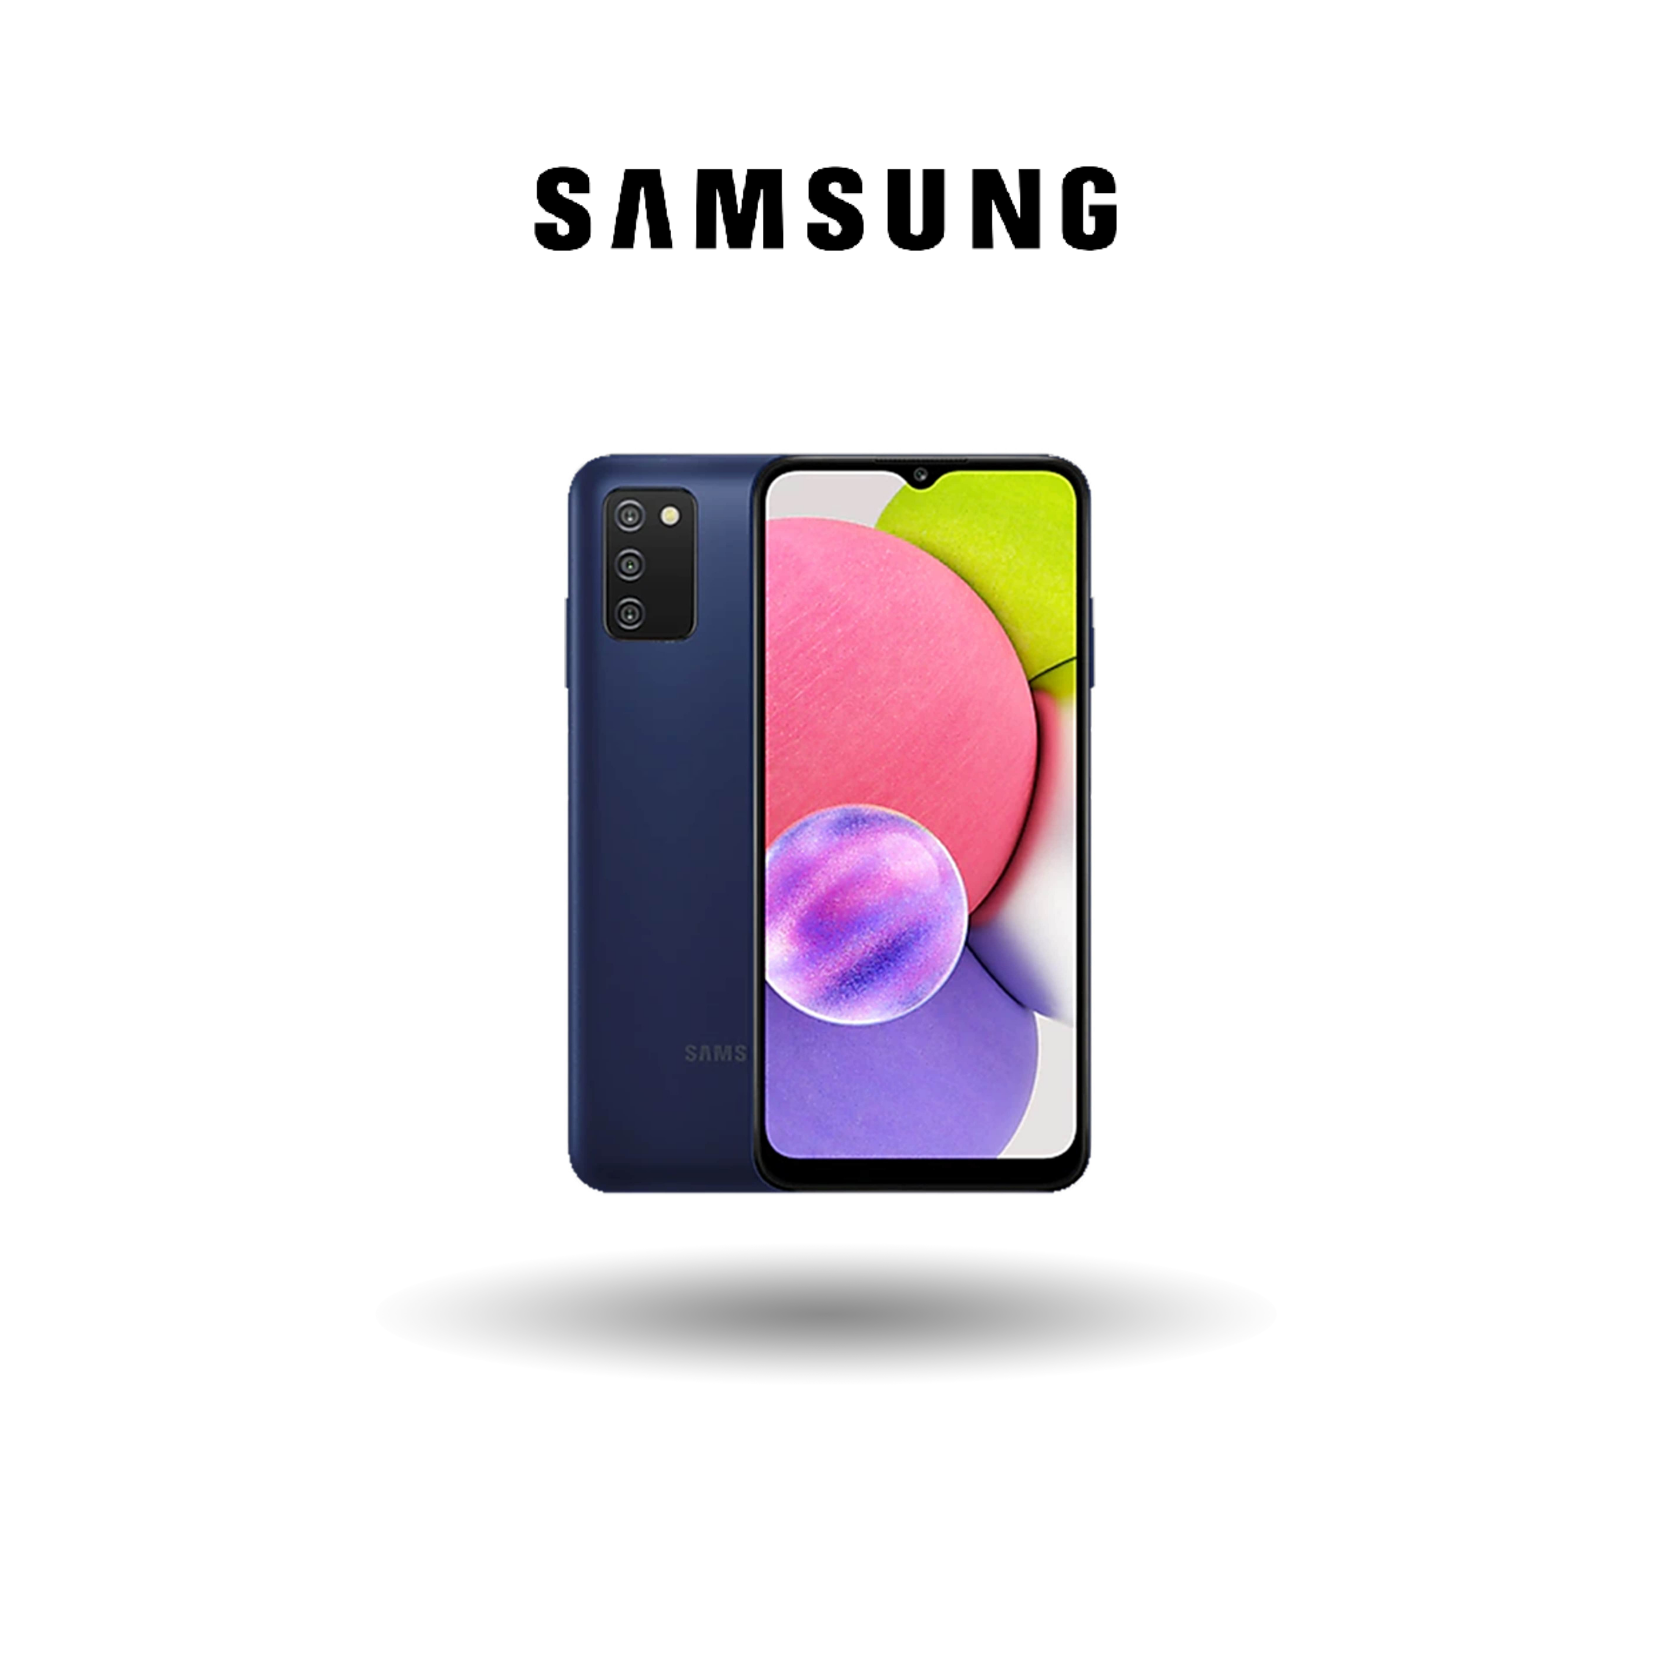 Samsung Galaxy A03s - 4GB RAM + 64GB ROM  Helio P35  6.5” HD+ PLS Display